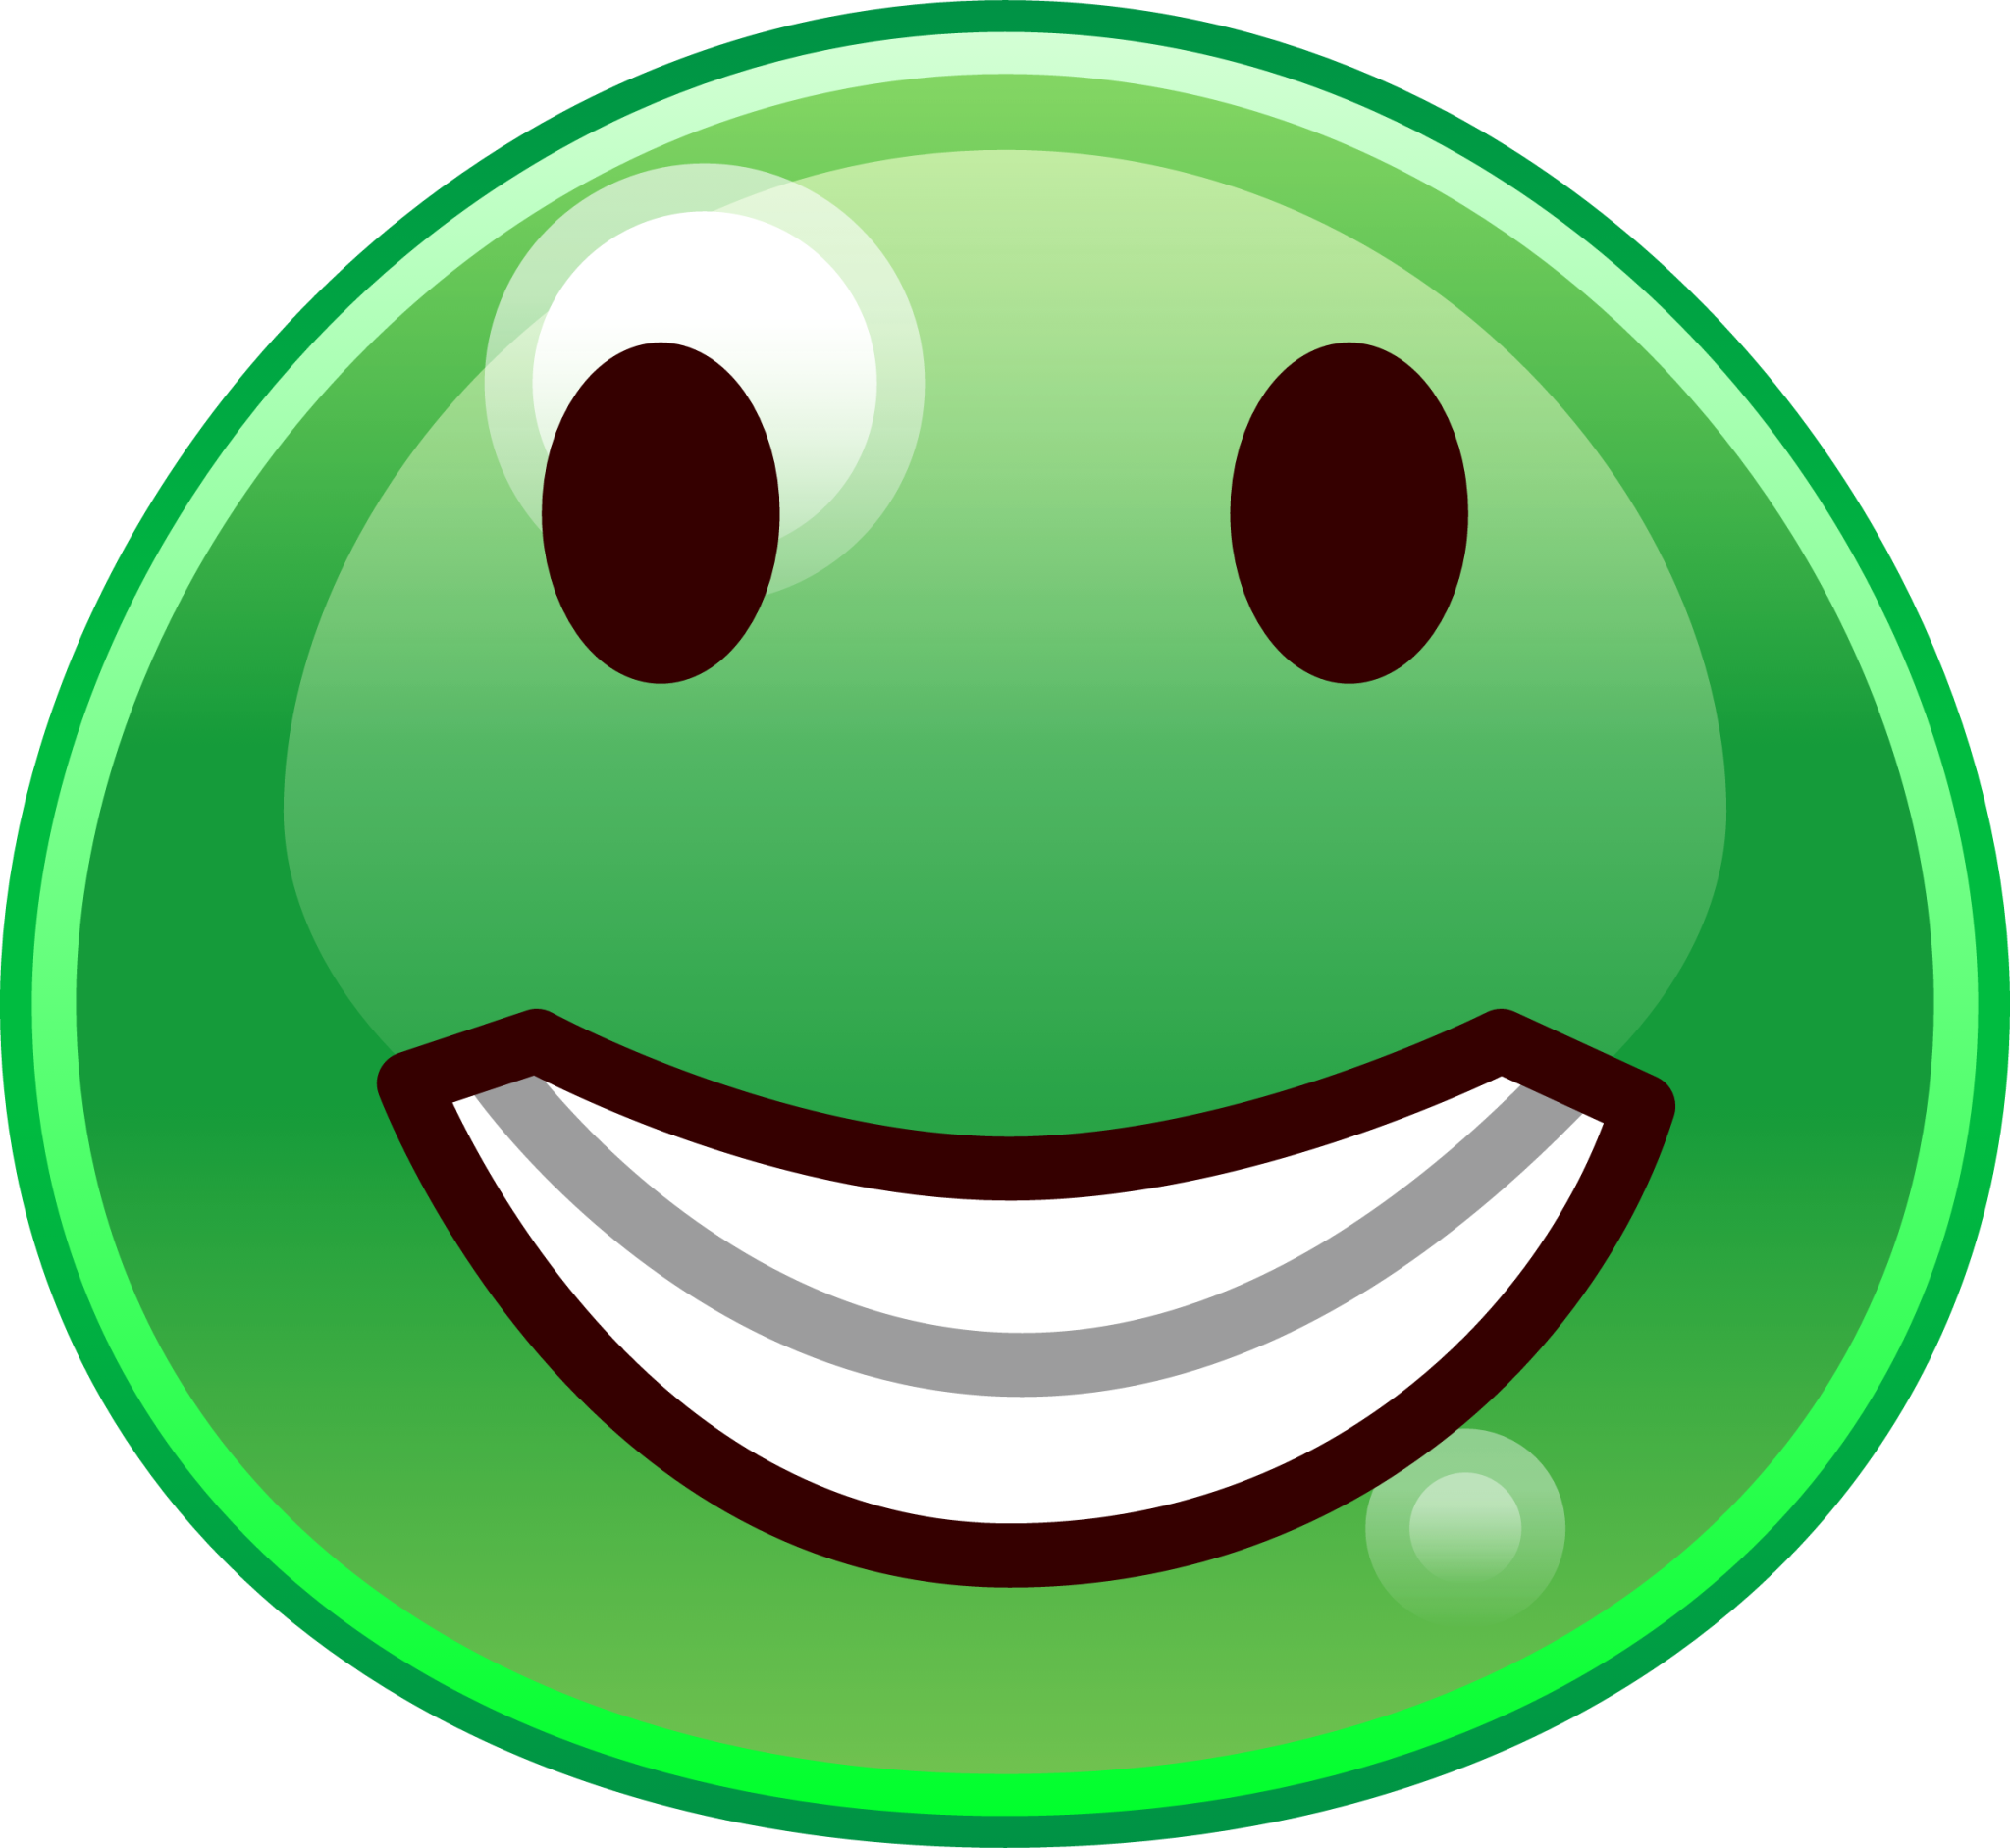 grinning (slime) emoji